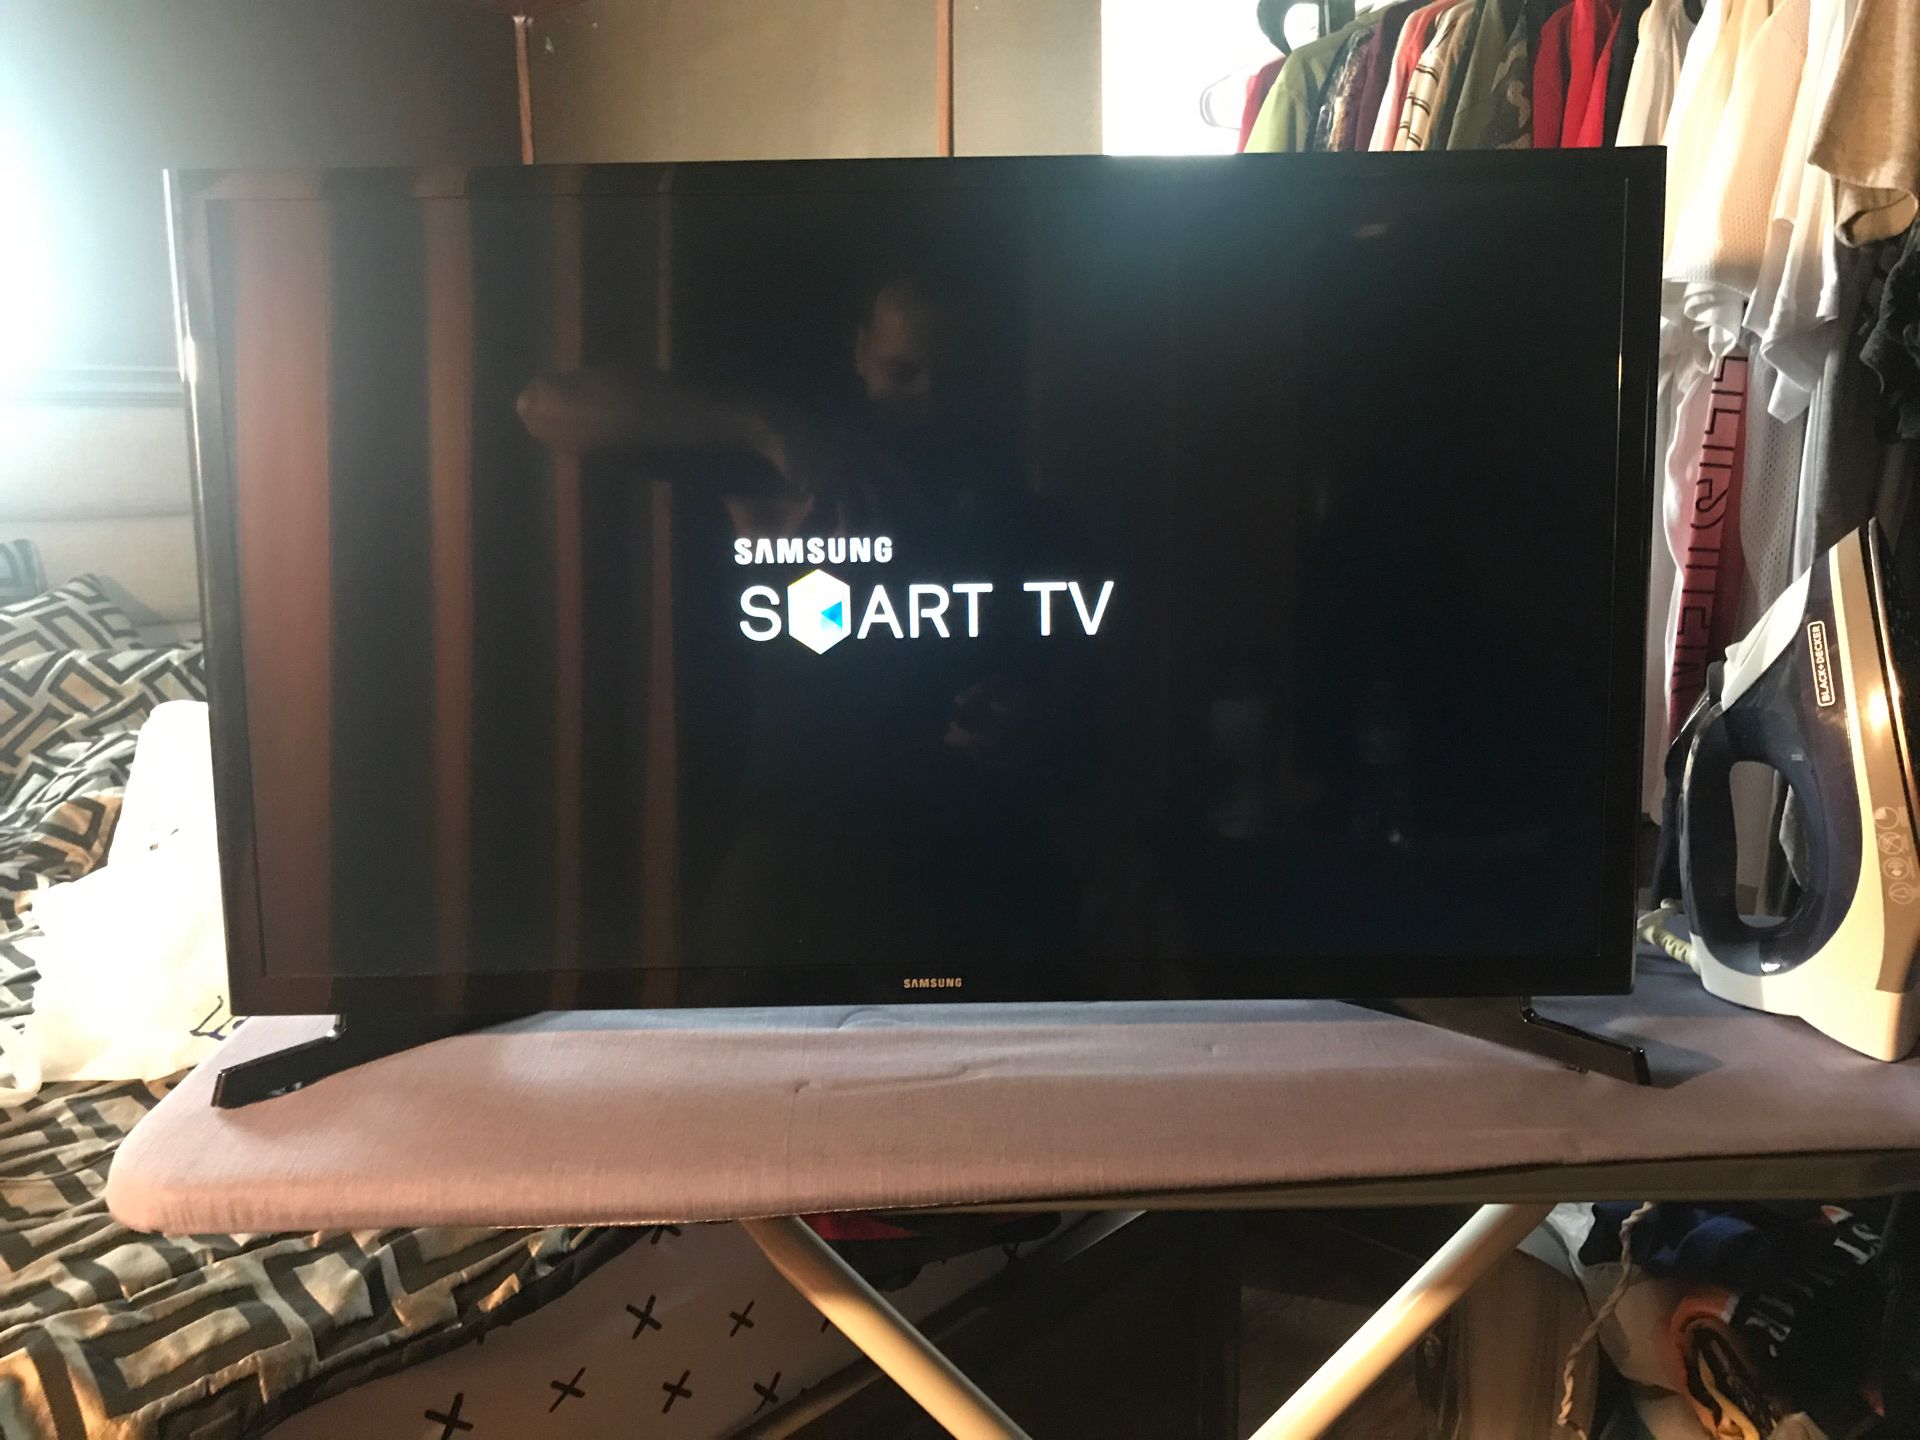 32” in Samsung Smart Tv